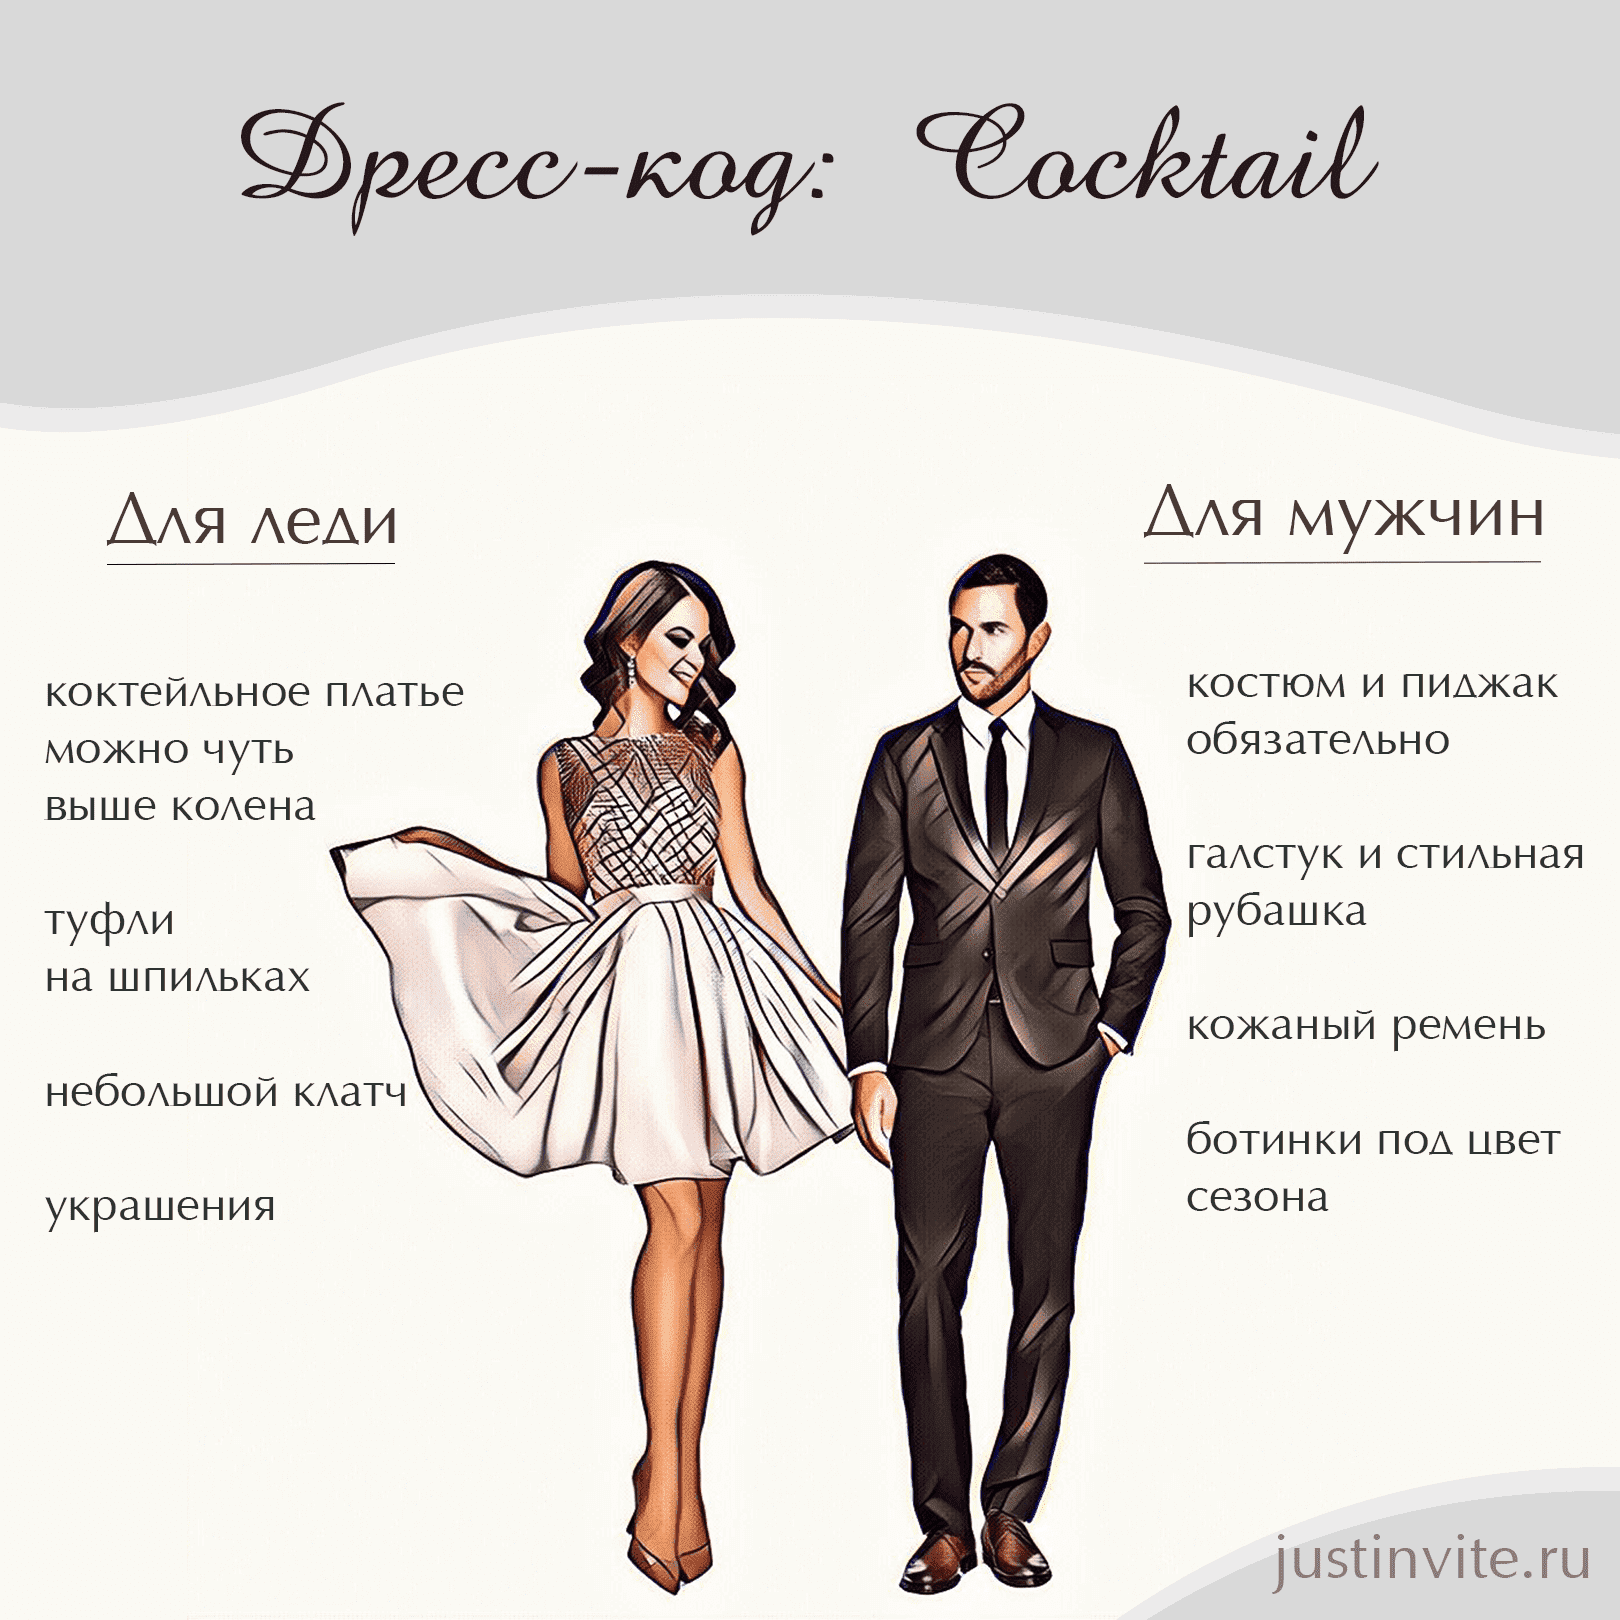 Дресс-код Cocktail или Festive attire для женщин и мужчин на свадьбу, день рождения или вечеринку.